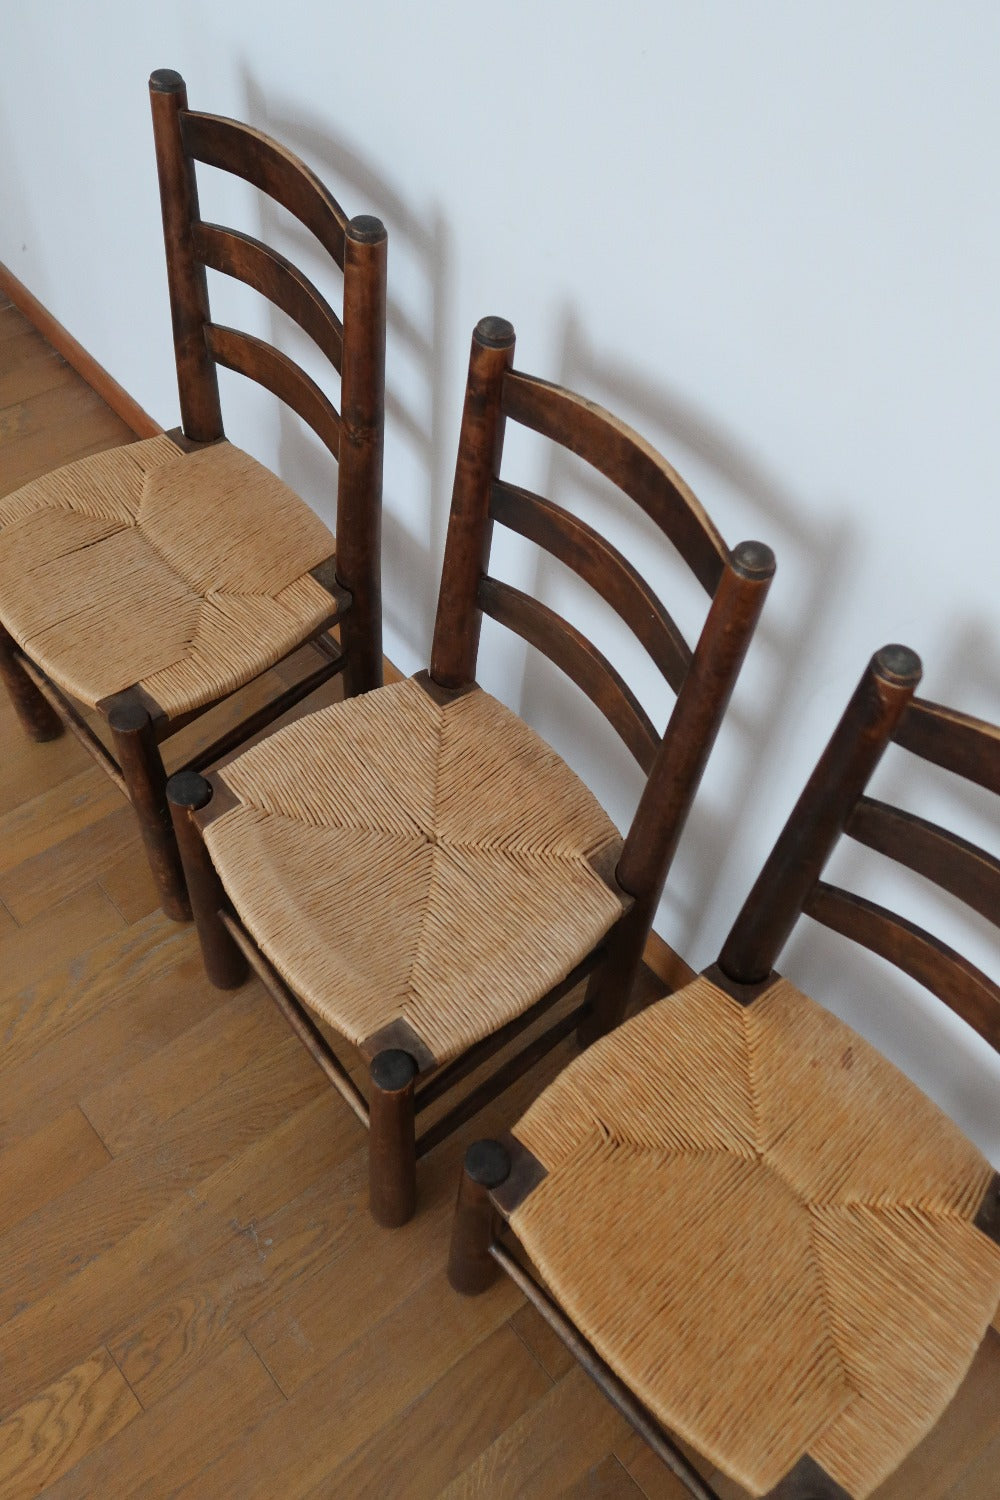 3 chaises rustique brutaliste ferme Georges Robert années 50 60 bois pin massif paillage paillée